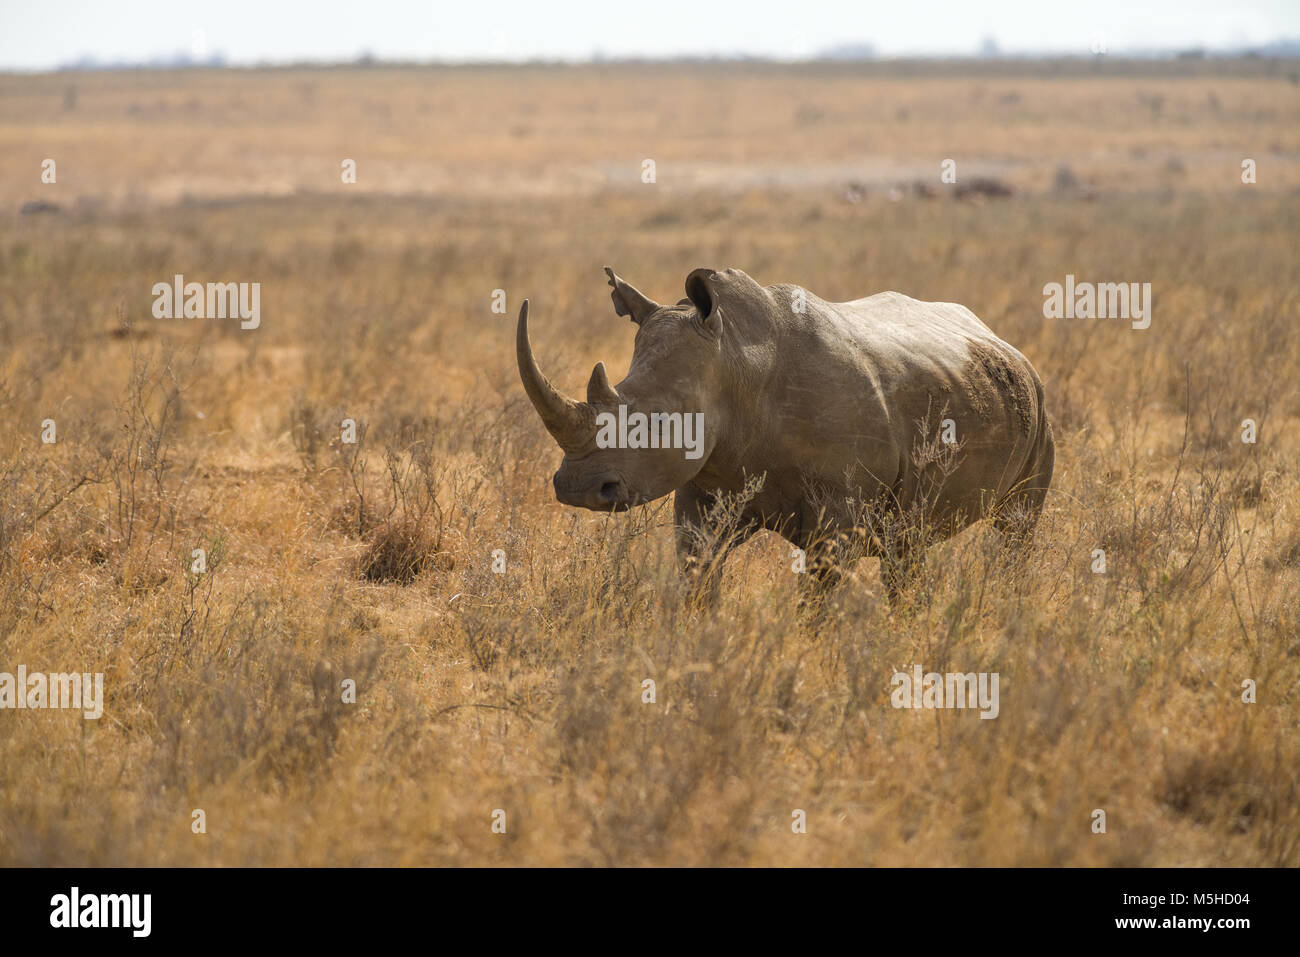 Un rhinocéros blanc ou square-lipped rhinoceros (Ceratotherium simum) dans les hautes herbes sèches, le Parc National de Nairobi, Kenya Banque D'Images